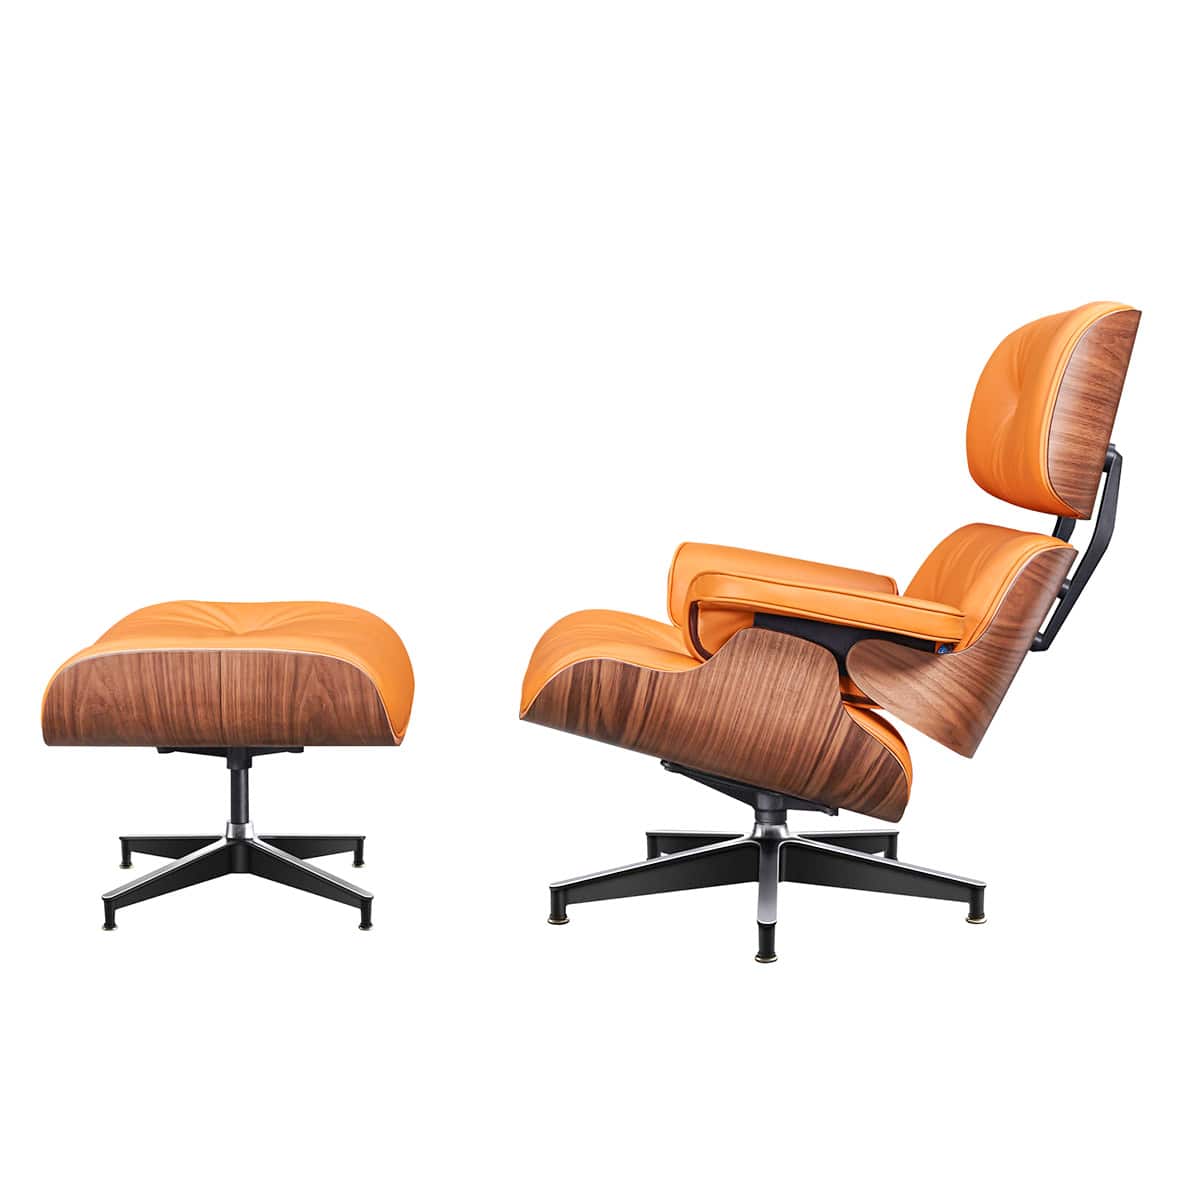 XL eames lounge chair CKTY328